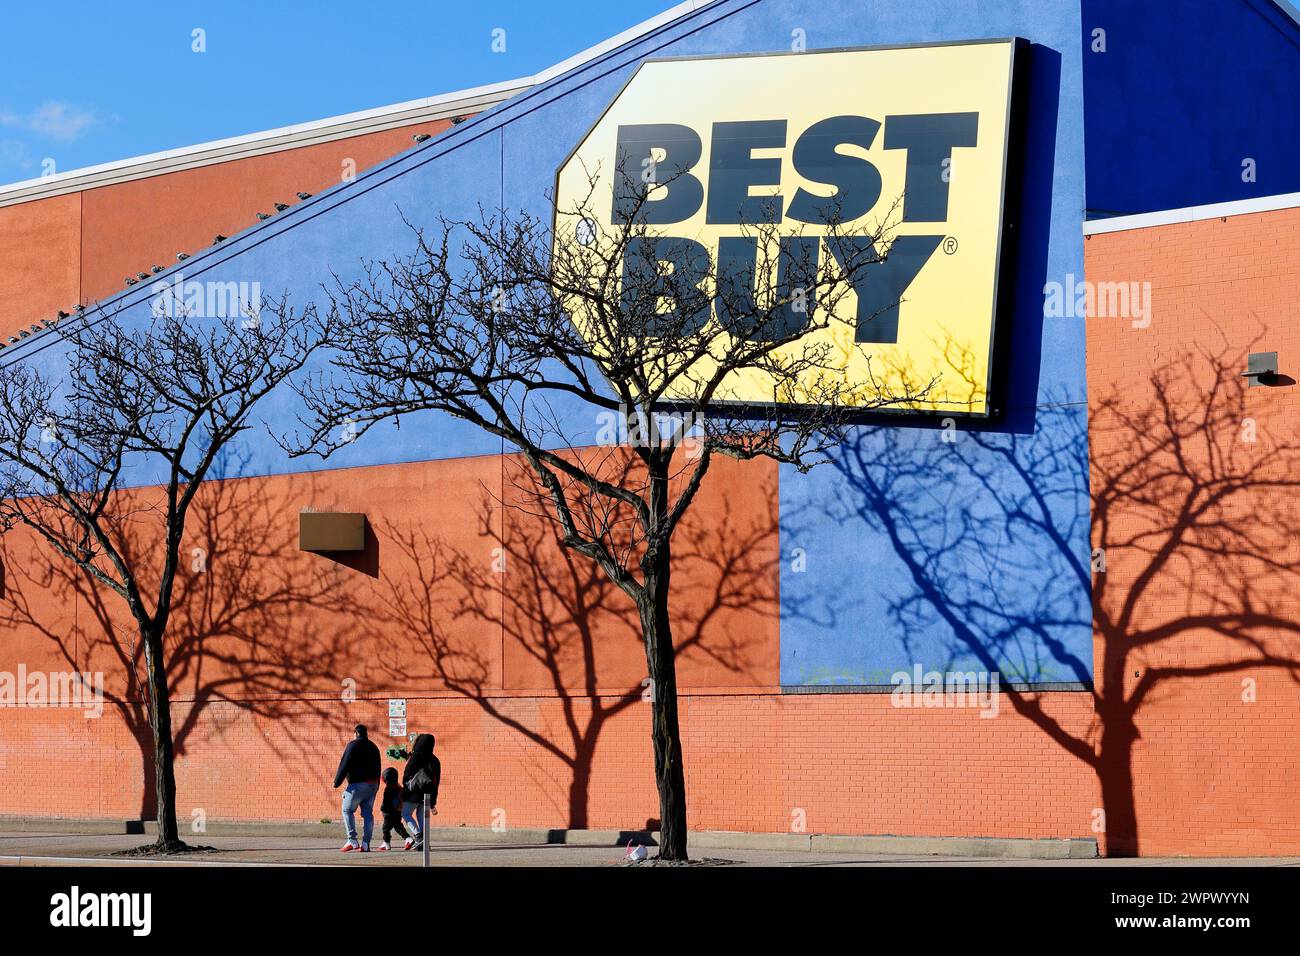 Les gens marchent devant un gigantesque panneau Best Buy sur le côté d'un bâtiment dans le comté de Queens, New York. BEST Buy est un détaillant d'électronique grand public. Banque D'Images